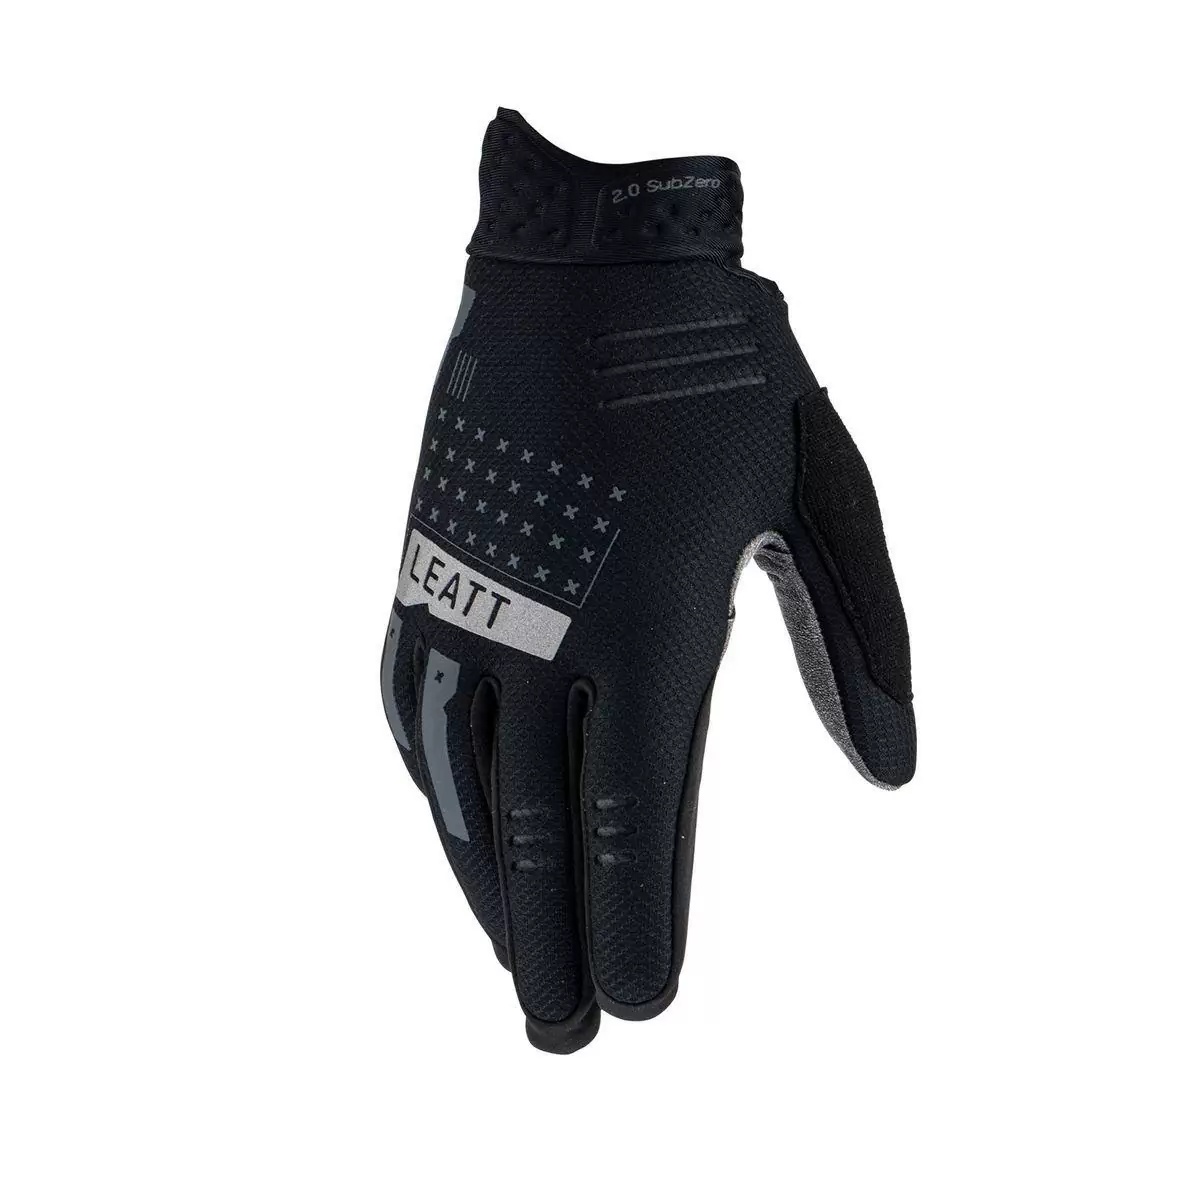 Winter Glove Mtb 2.0 subzero Noir taille S #2